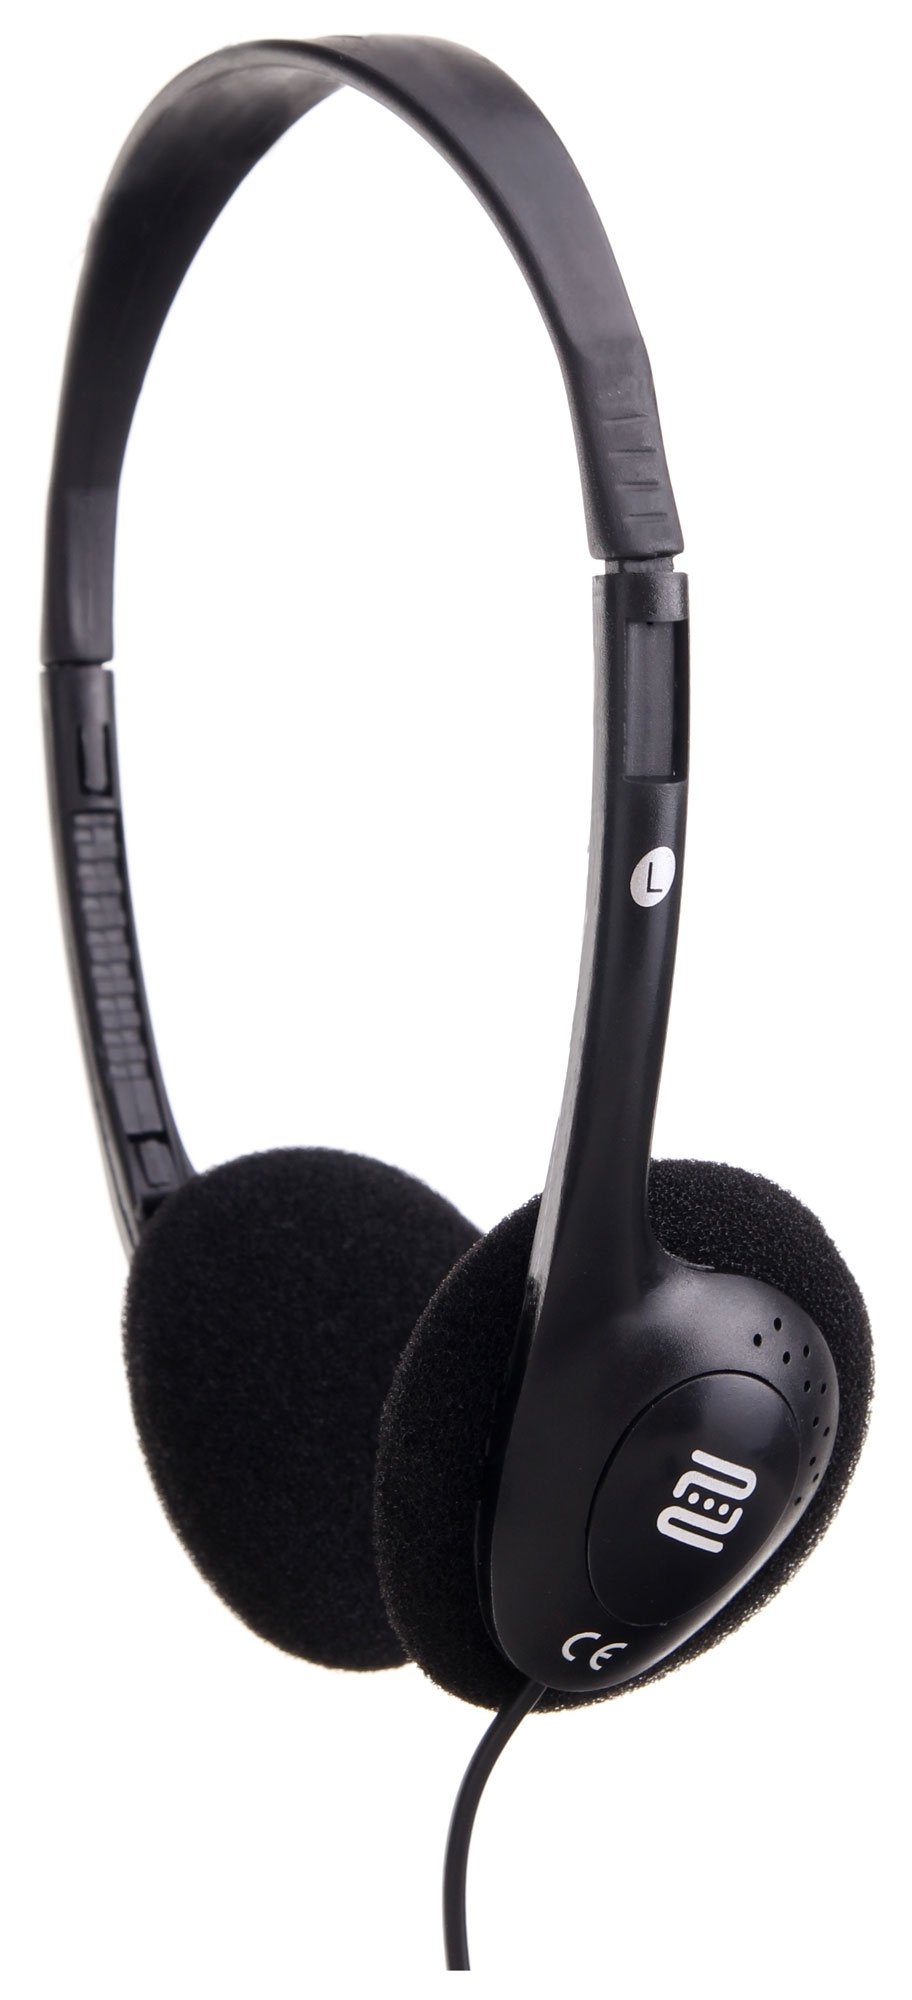 Pronomic KH-10 Leicht Kopfhörer HiFi-Kopfhörer (Ideal für MP3-Player, TV, E-Piano, E-Drum und Fieldrecorder, Ideal für MP3-Player, TV, E-Piano, E-Drum und Fieldrecorder) | HiFi-Kopfhörer